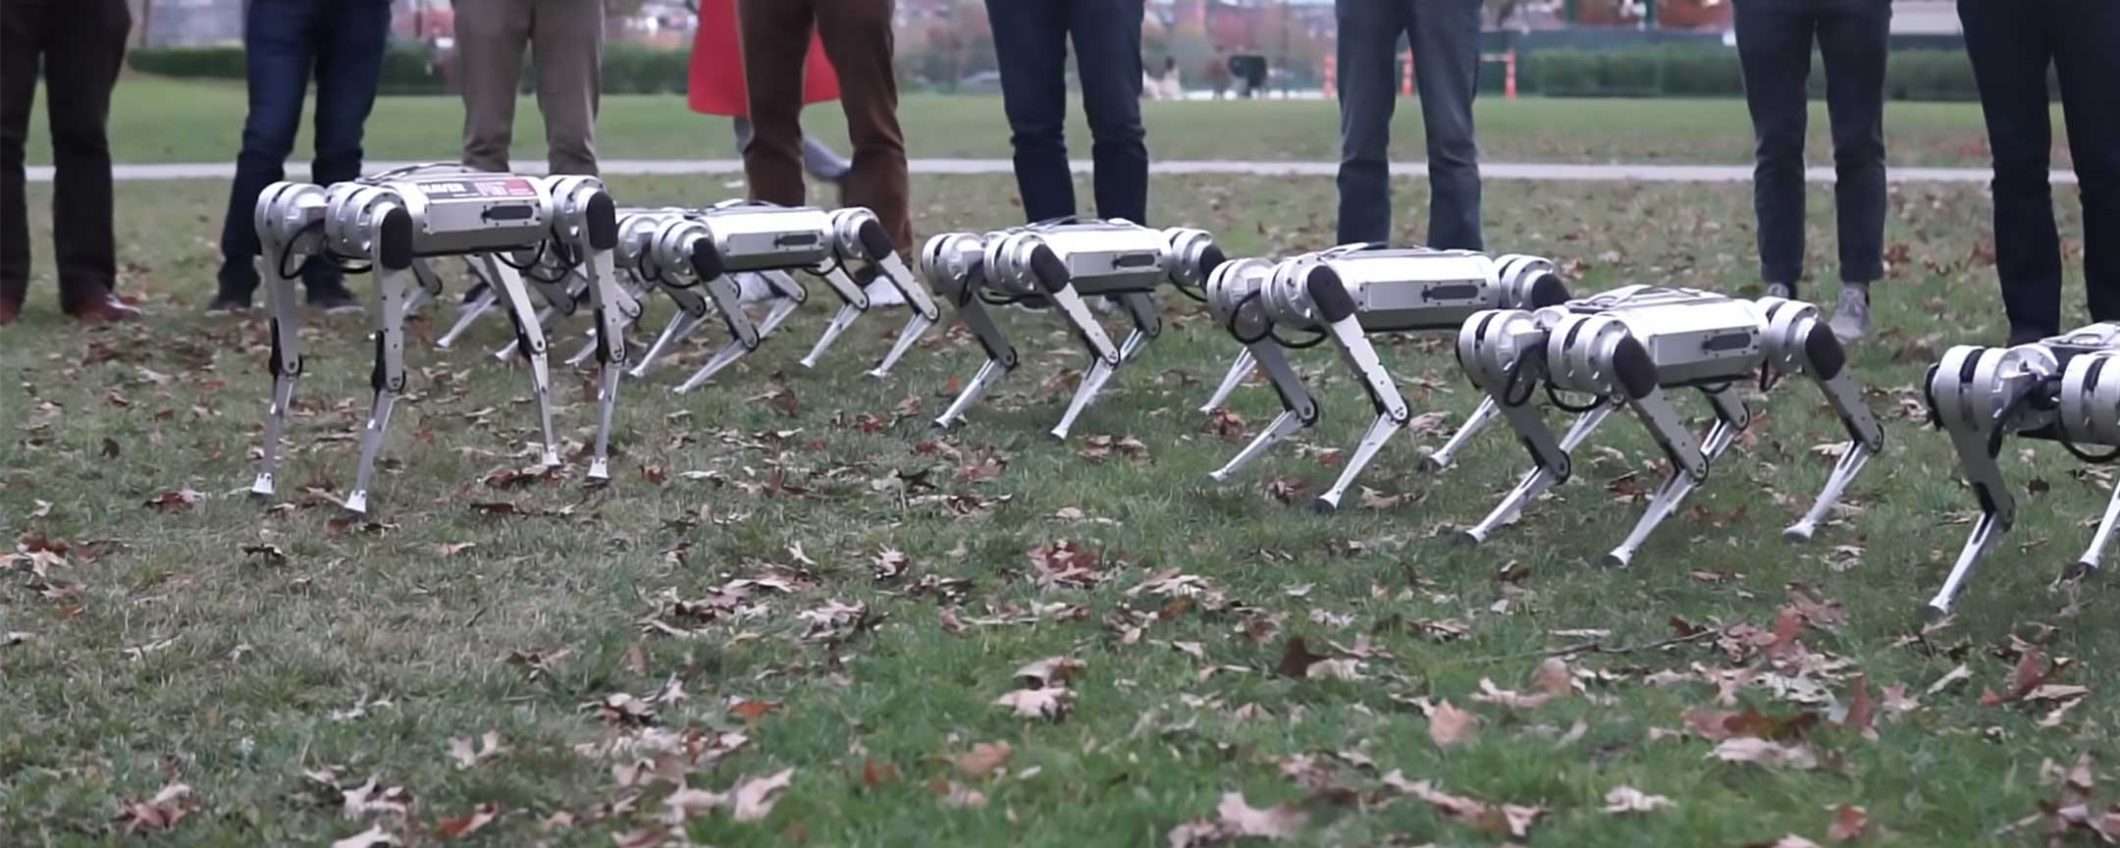 Il MIT porta i suoi robot Mini Cheetah al parco